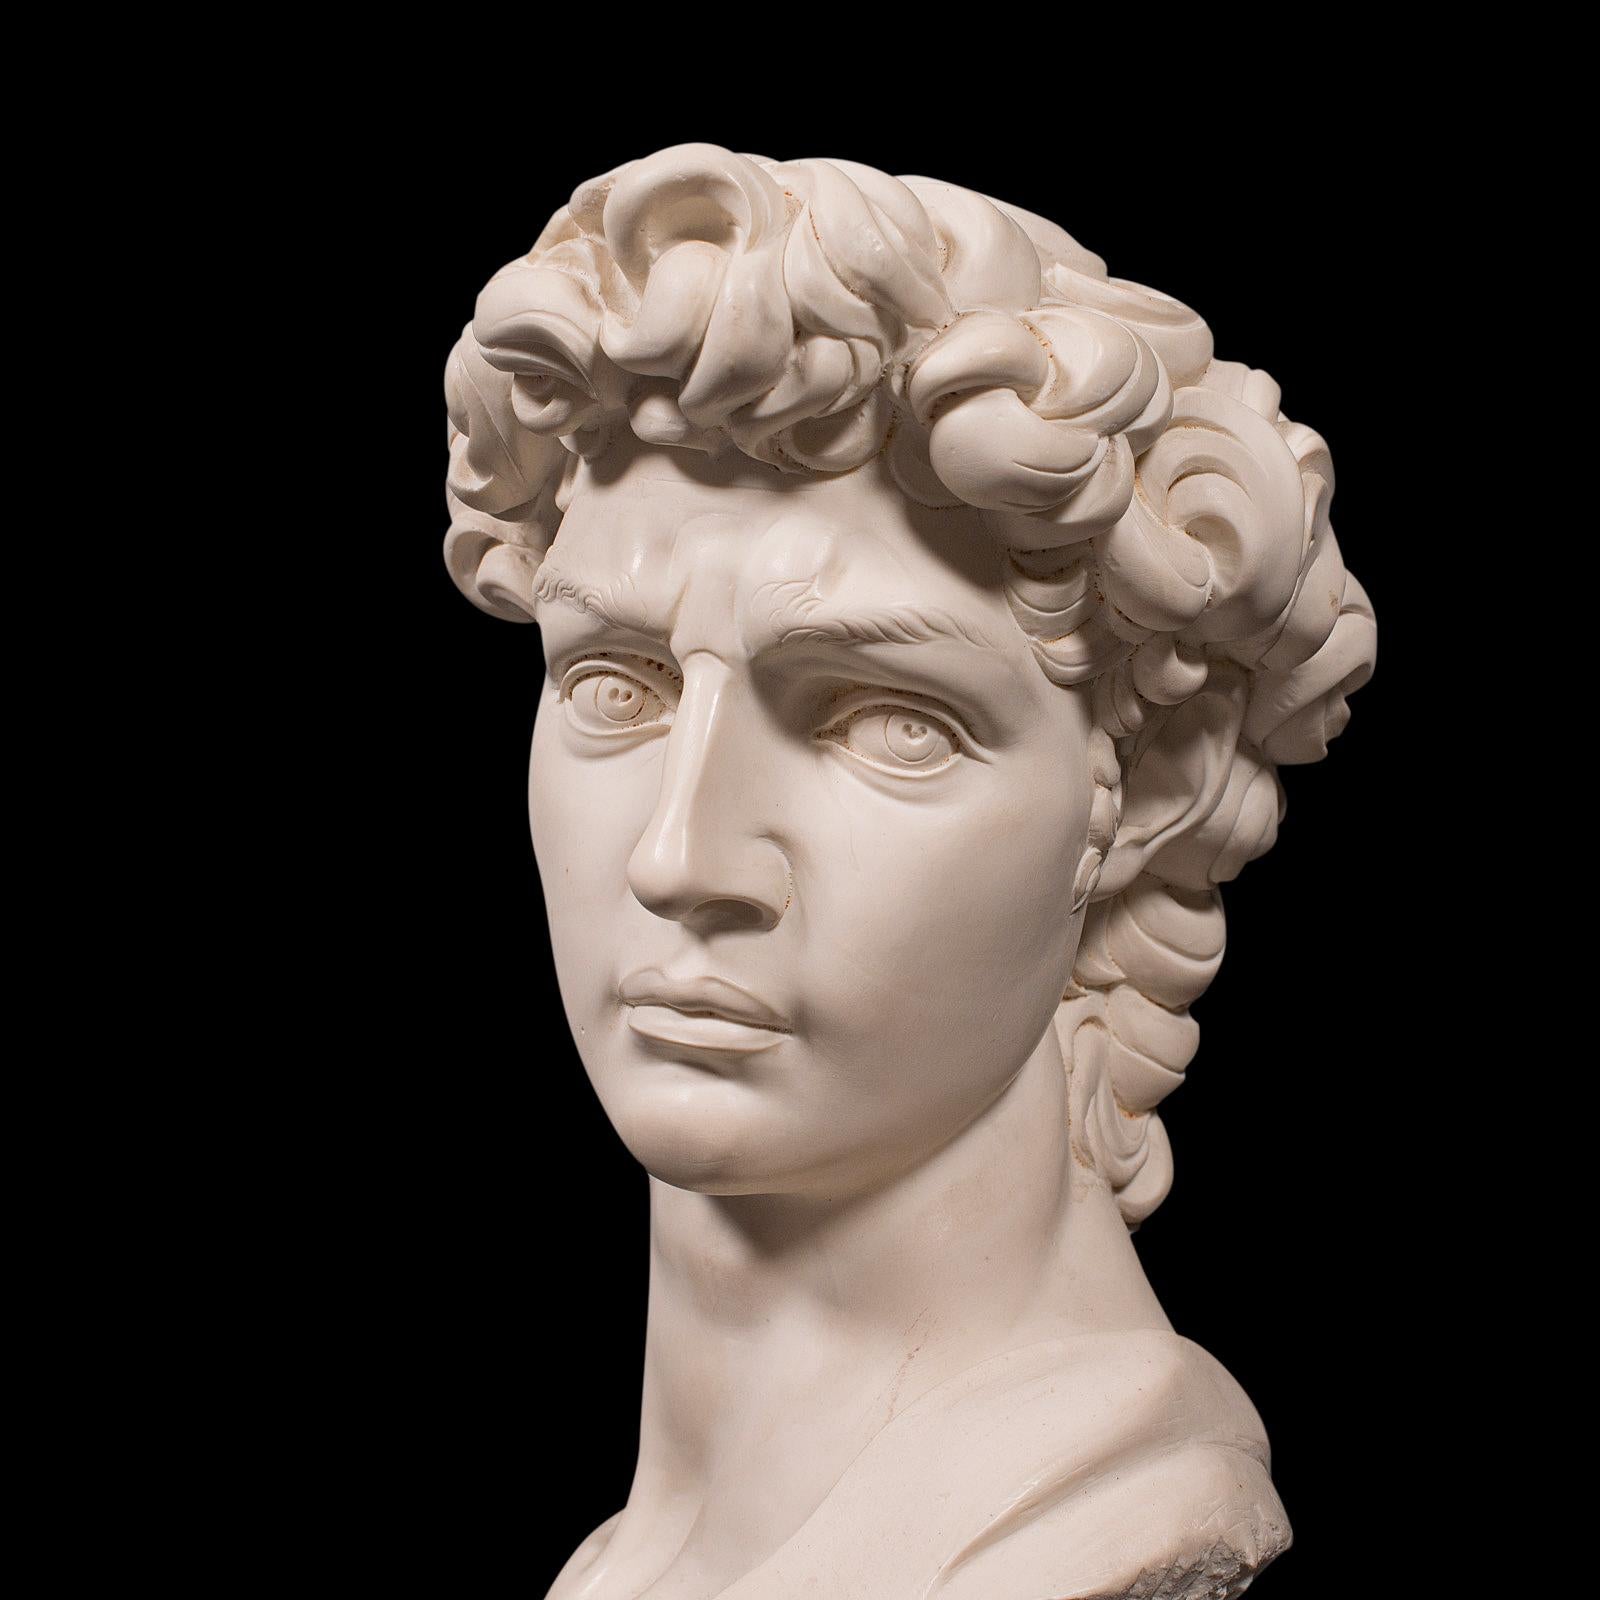 Vintage Portrait Bust, Italian, Marble Base, Statue, Michelangelo, David, Decor 3